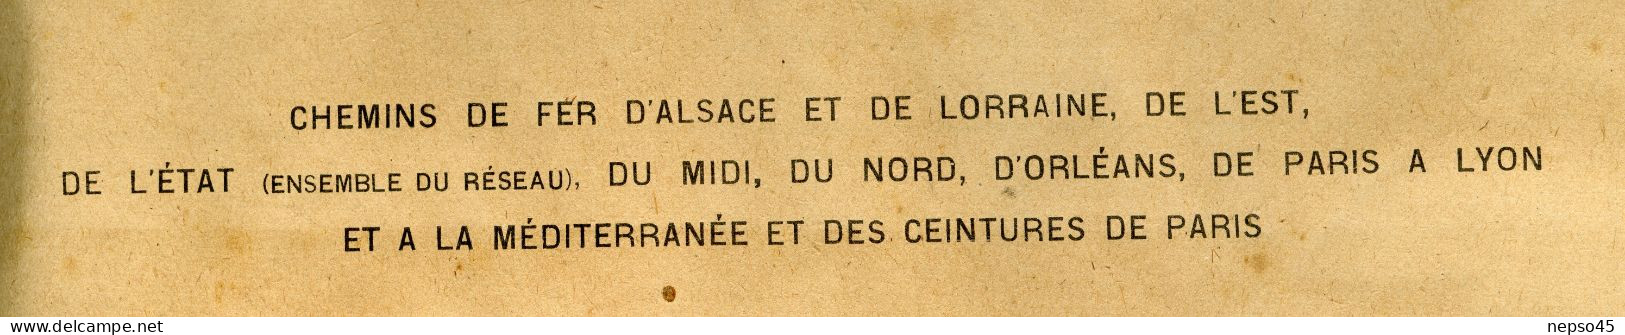 Instructions Générales.1926.Transport à Petite Vitesse.Chemins De Fer.Alsace-Lorraine.de L'Est.d'Etat.du Midi.du No - Chemin De Fer